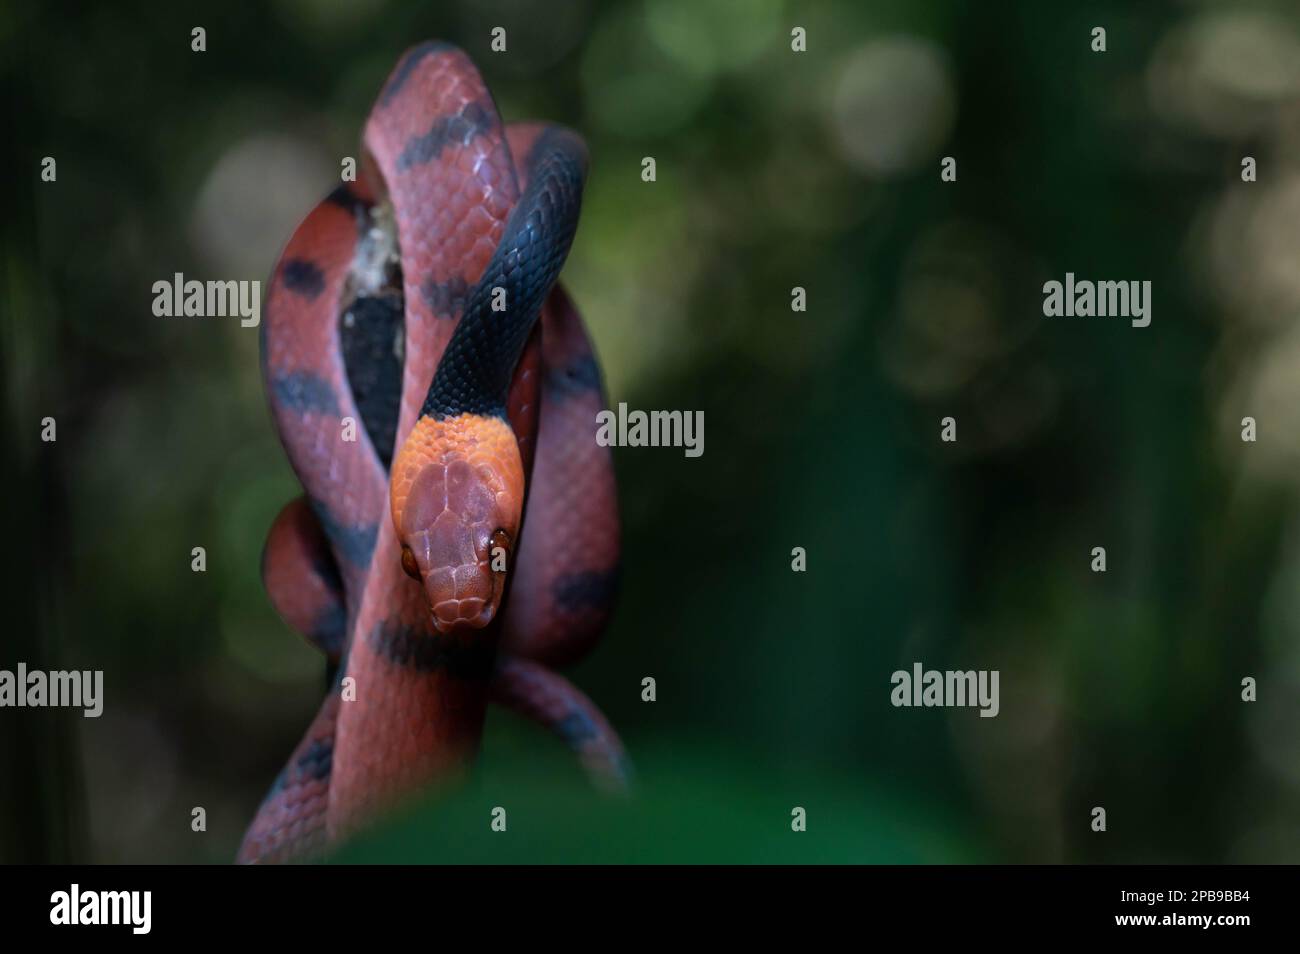 Una vinesnake rossa (Siflophis compressus) della regione di Loreto dell'Amazzonia peruviana. Foto Stock